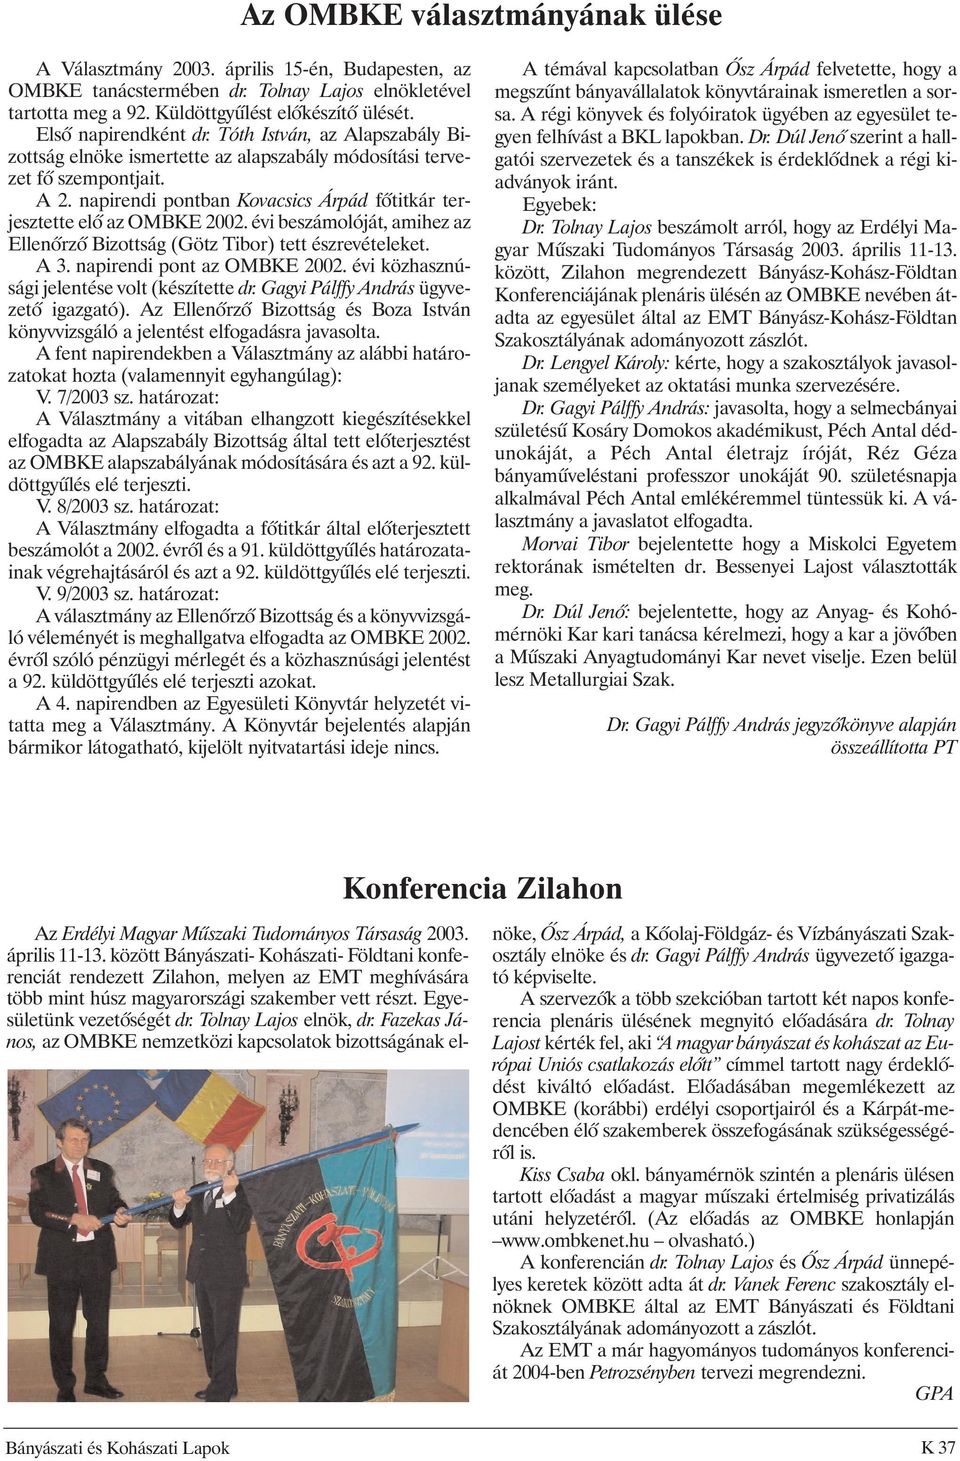 napirendi pontban Kovacsics Árpád fõtitkár terjesztette elõ az OMBKE 2002. évi beszámolóját, amihez az Ellenõrzõ Bizottság (Götz Tibor) tett észrevételeket. A 3. napirendi pont az OMBKE 2002.